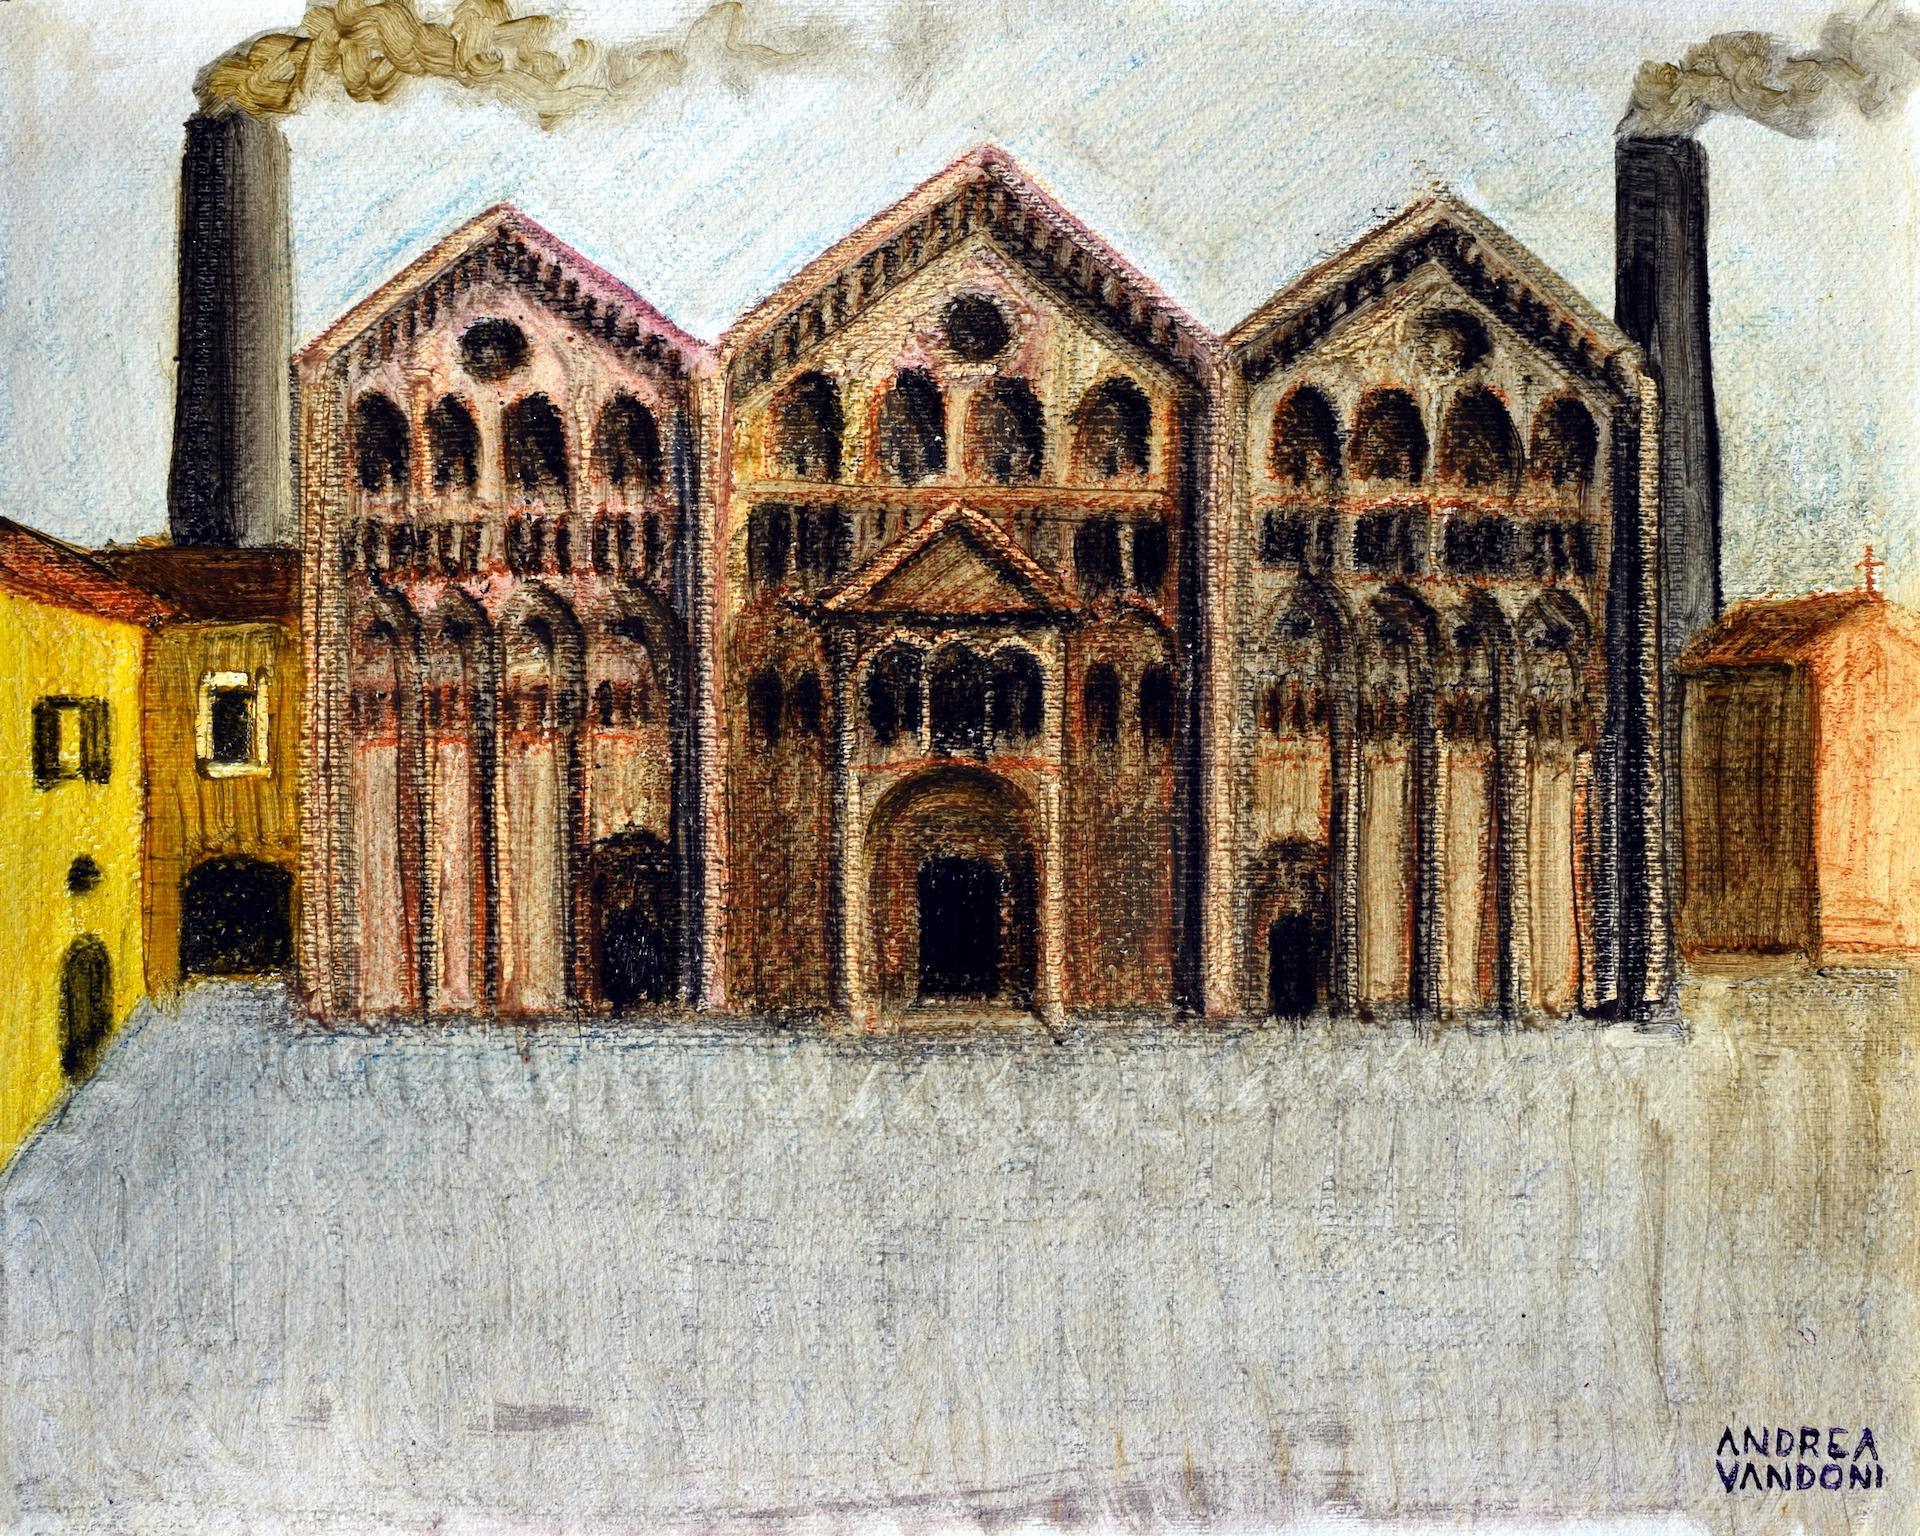 Techniques mixtes sur papier

Andrea Vandoni est un artiste italien né en 1972 qui vit et travaille à Novara, en Italie. L'artiste a étudié et s'est formé à l'école des archéologues et à l'école du nu de l'Académie des beaux-arts de Brera à Milan,